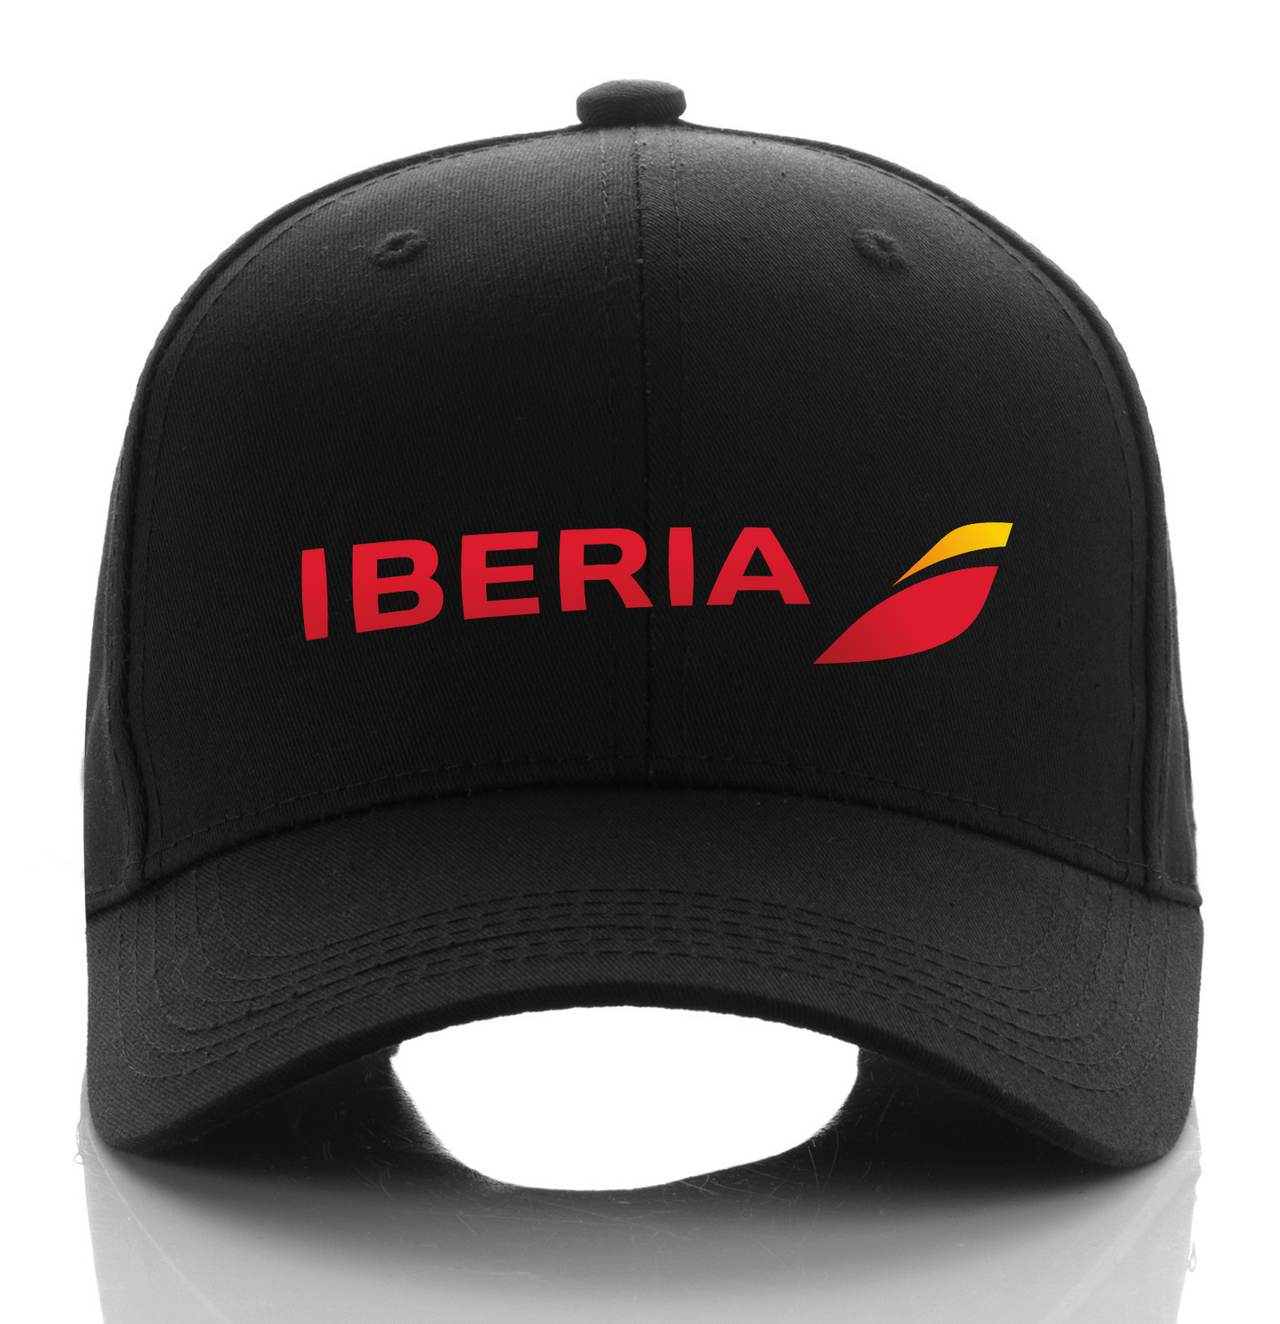 IBERIA AIRLINE DESIGNED CAP